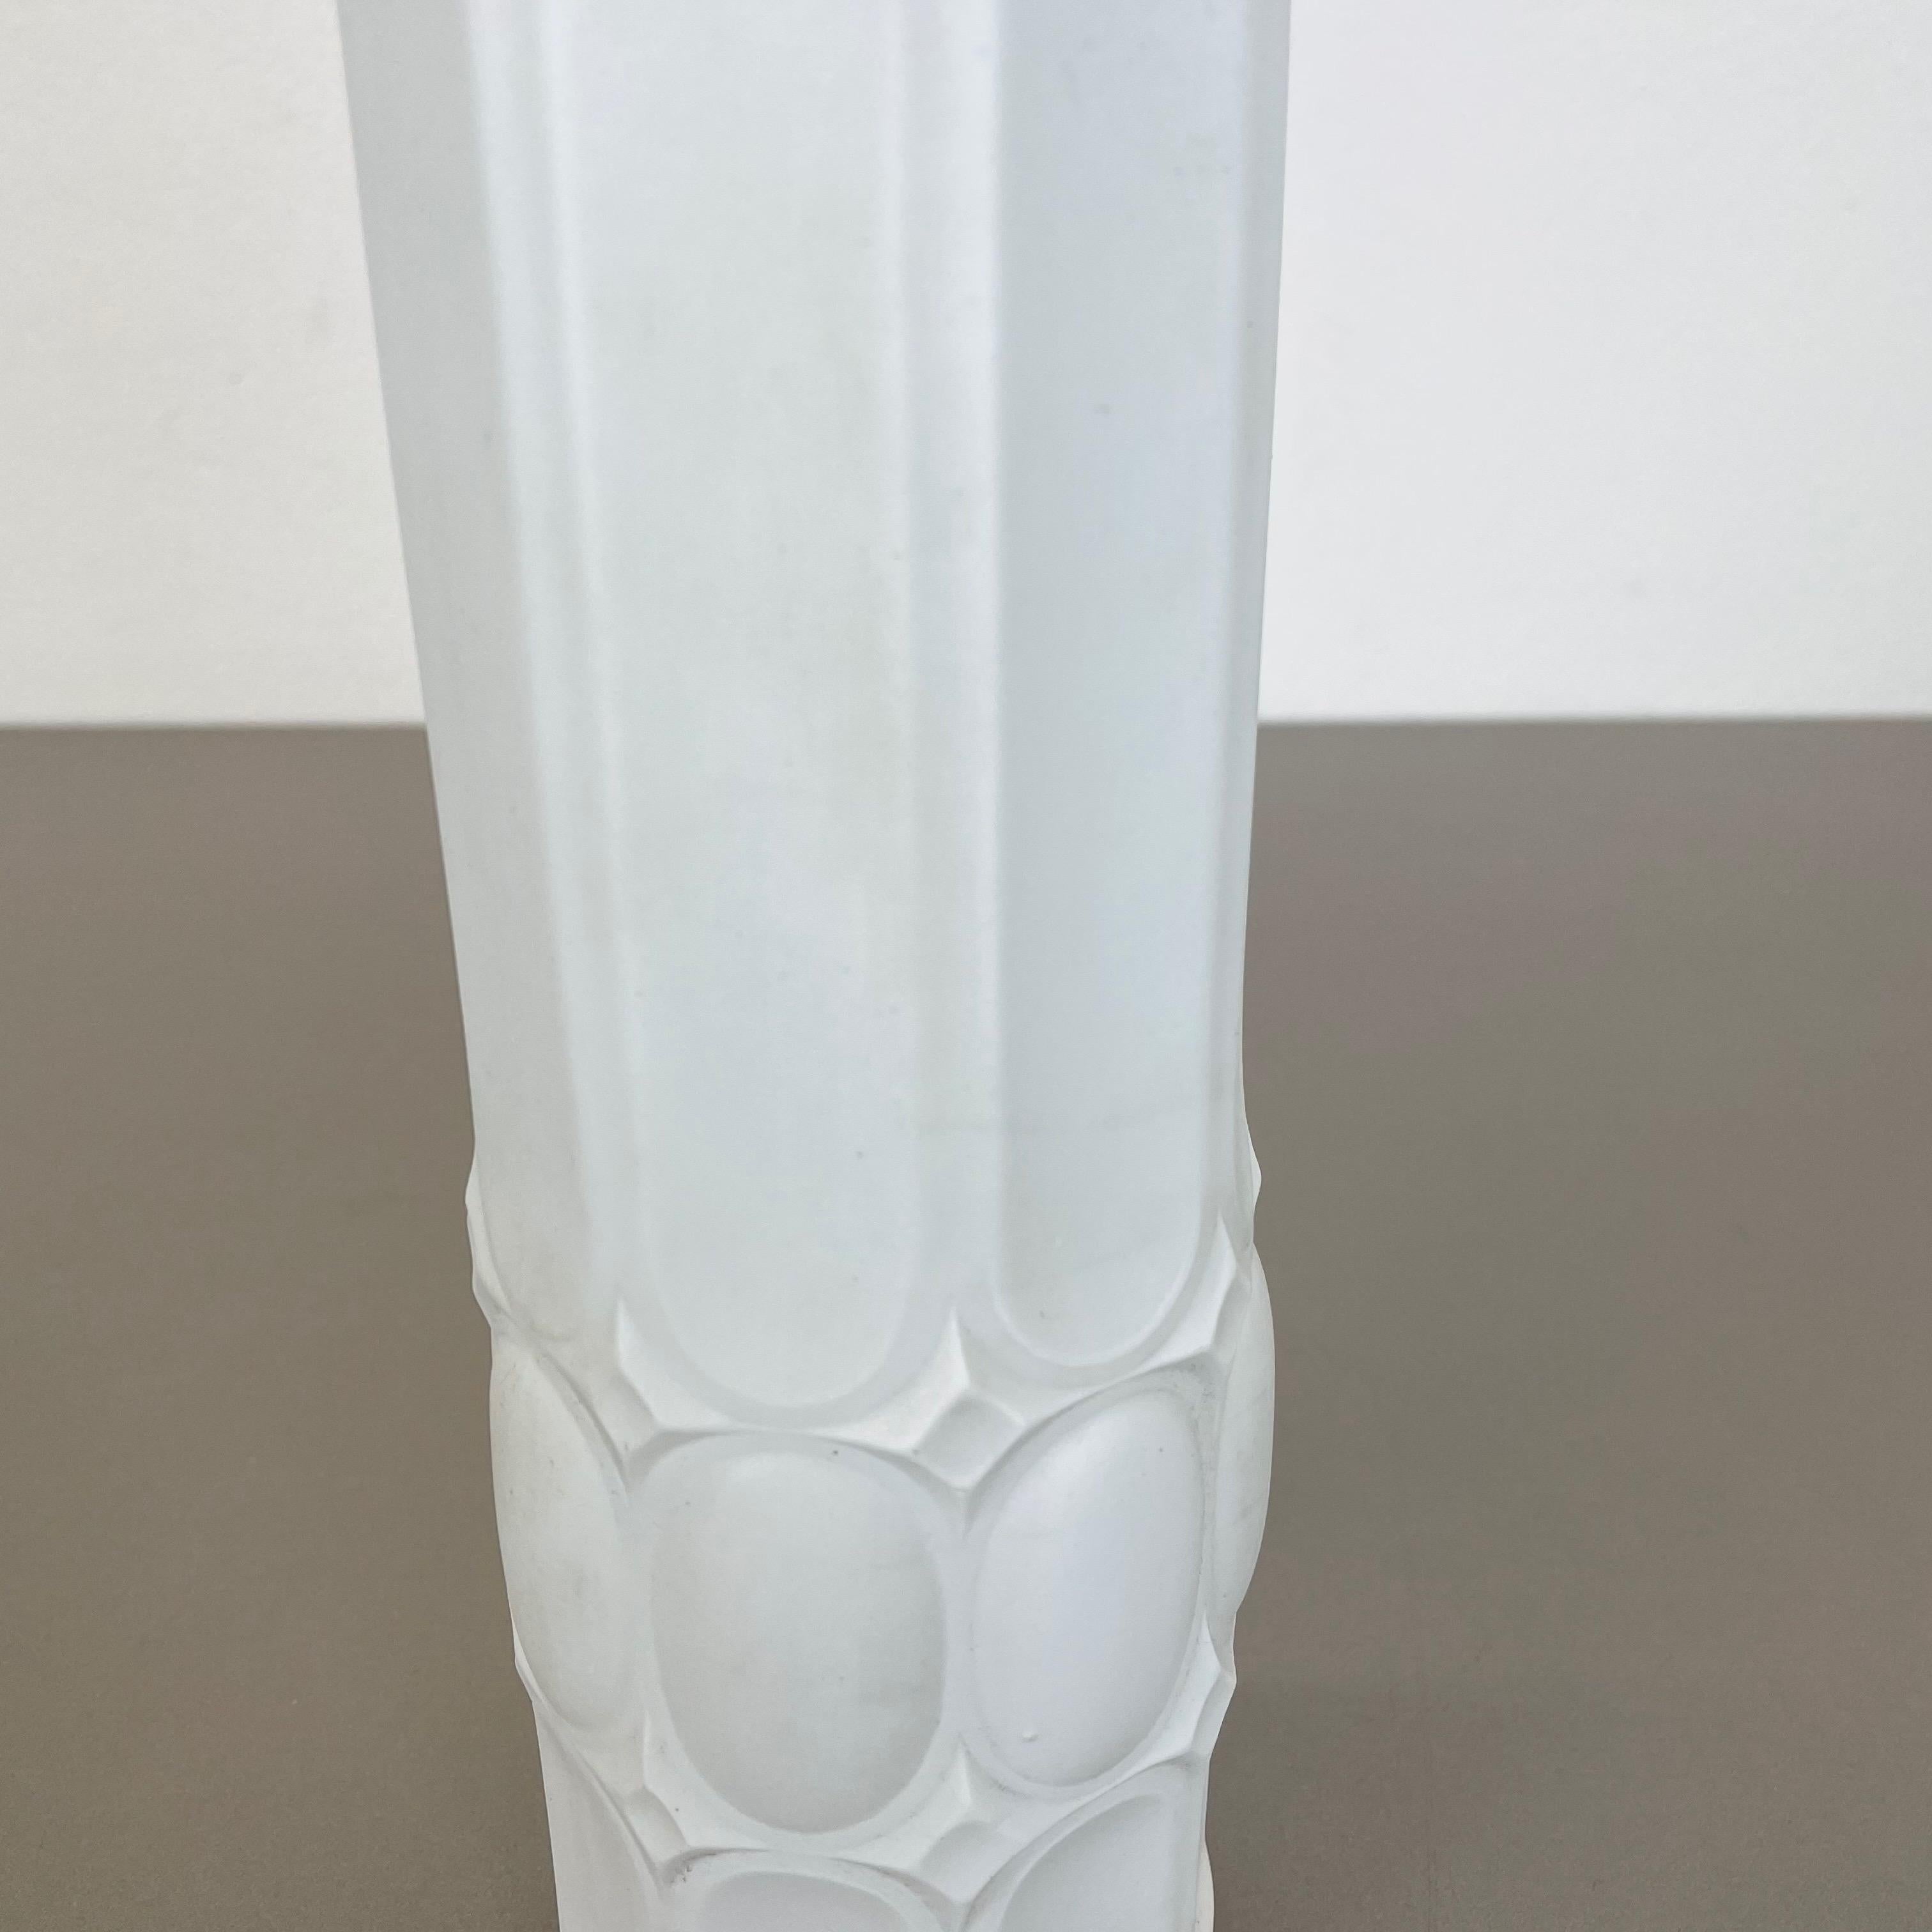 Original Large Porcelain OP Art Vase Made by Royal Bavaria KPM, Germany, 1970s For Sale 1